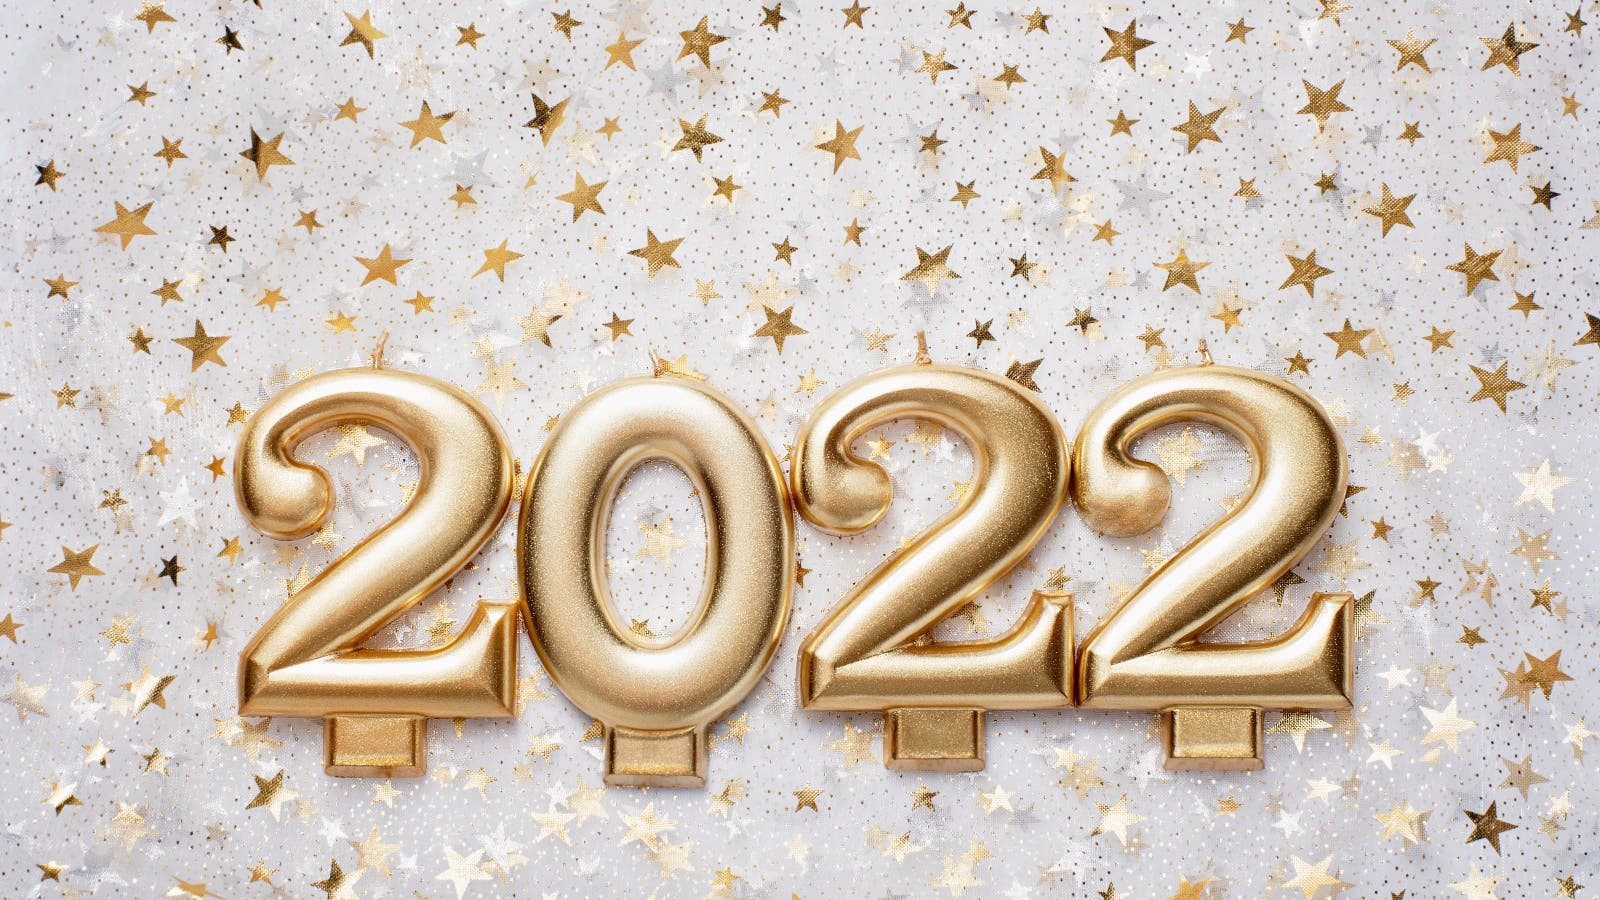 أفضل حكم وأقوال عن العام الجديد 2022